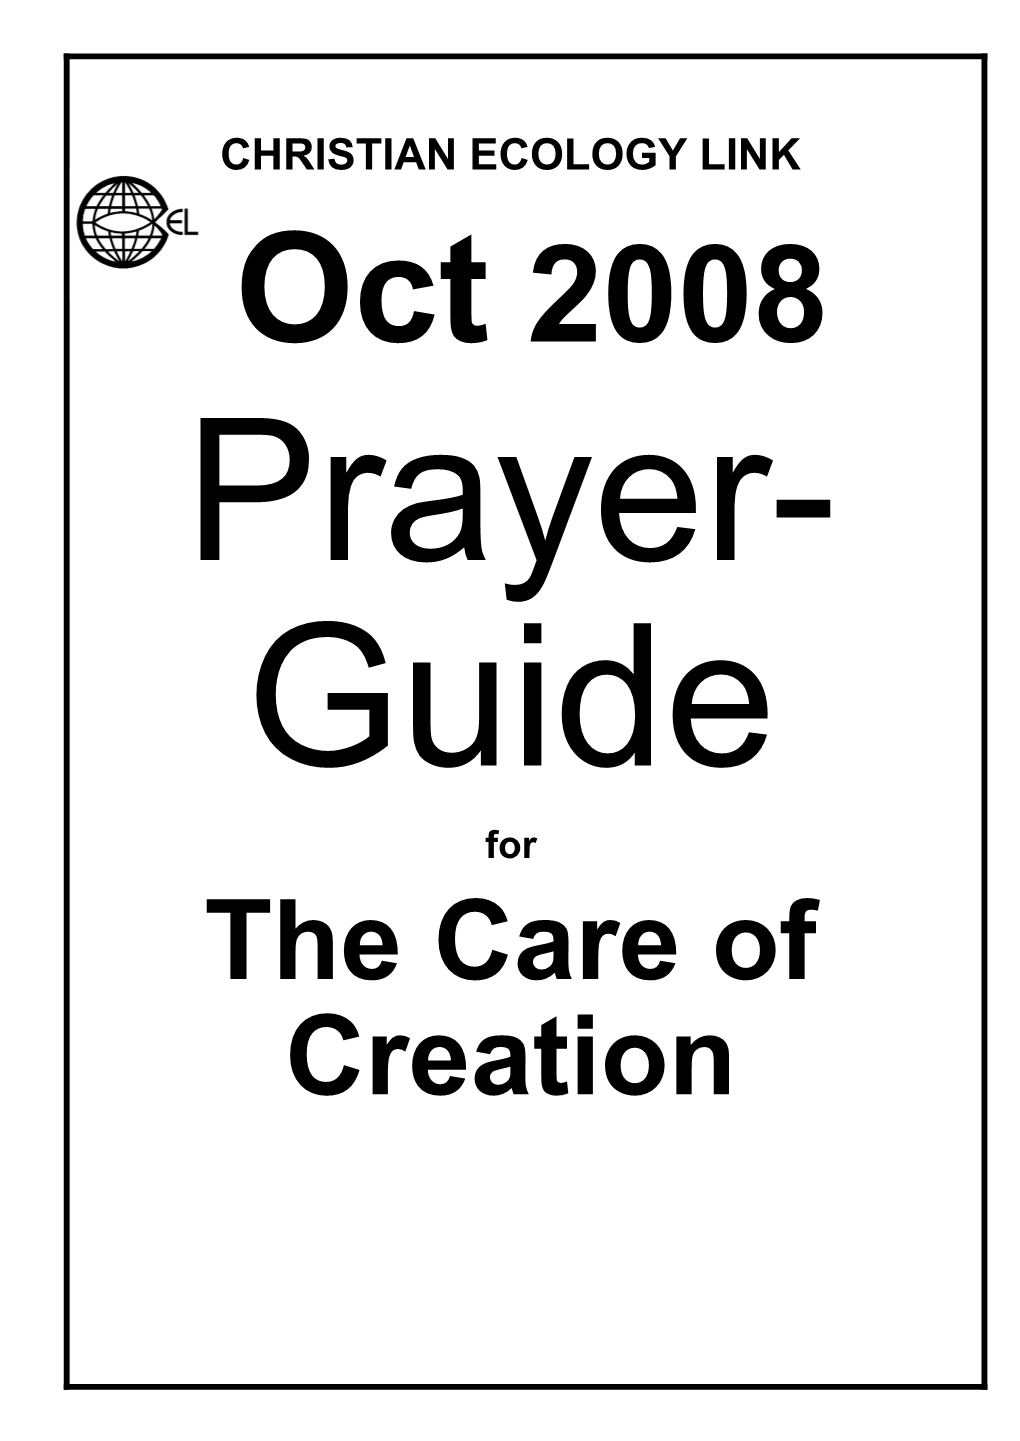 CEL September Prayer Guide 2008